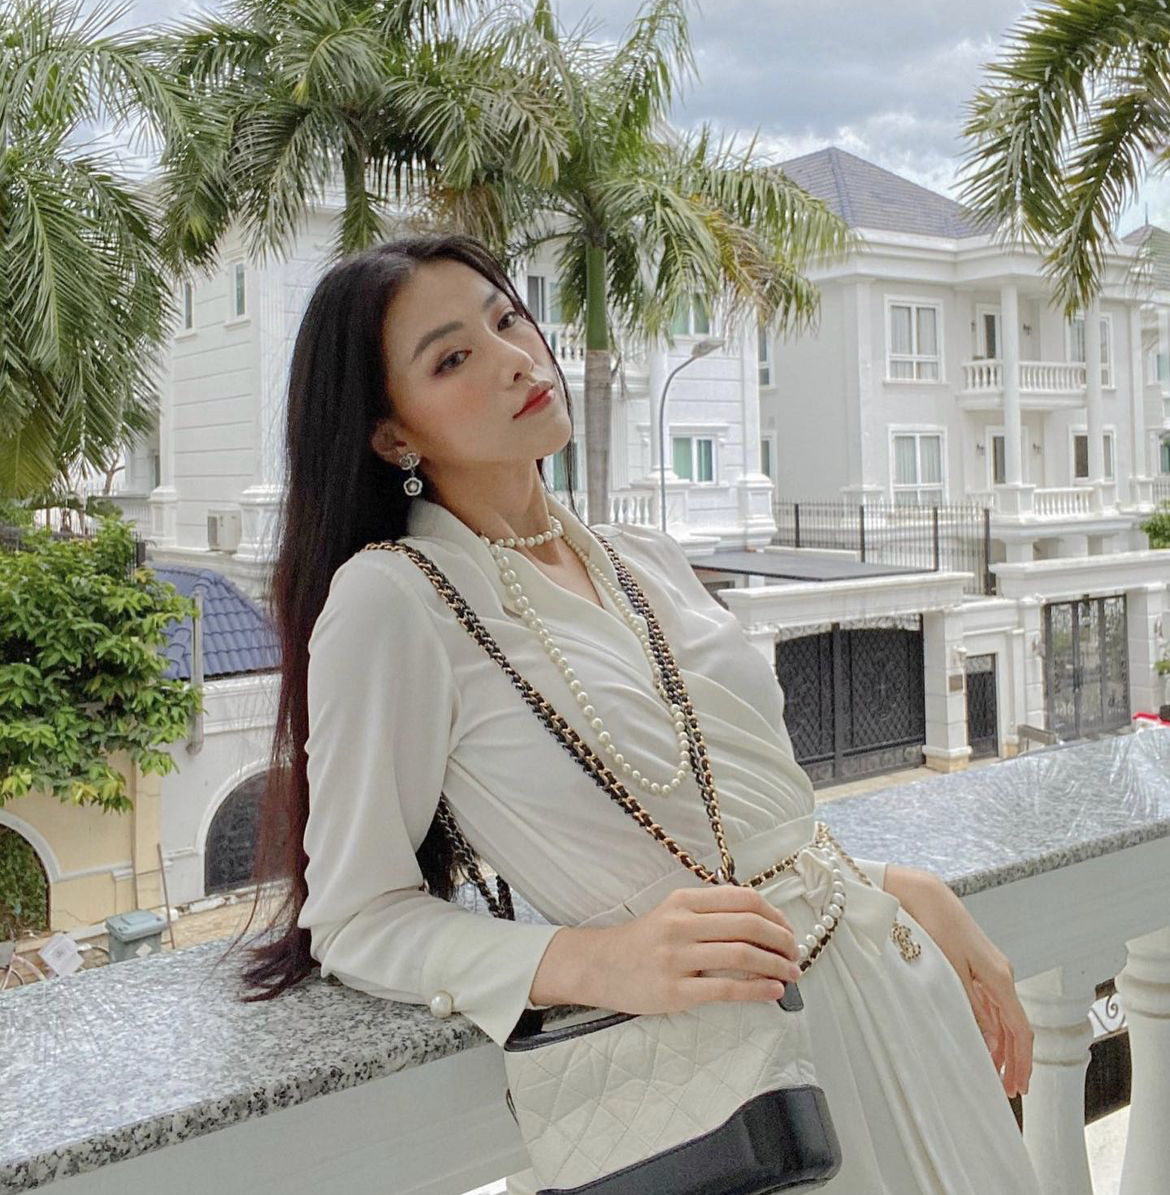 Hoa hậu Việt có 2 cơ ngơi ở tuổi 28: Penthouse sang xịn chưa choáng bằng toàn cảnh biệt thự tại khu nhà giàu - Ảnh 4.